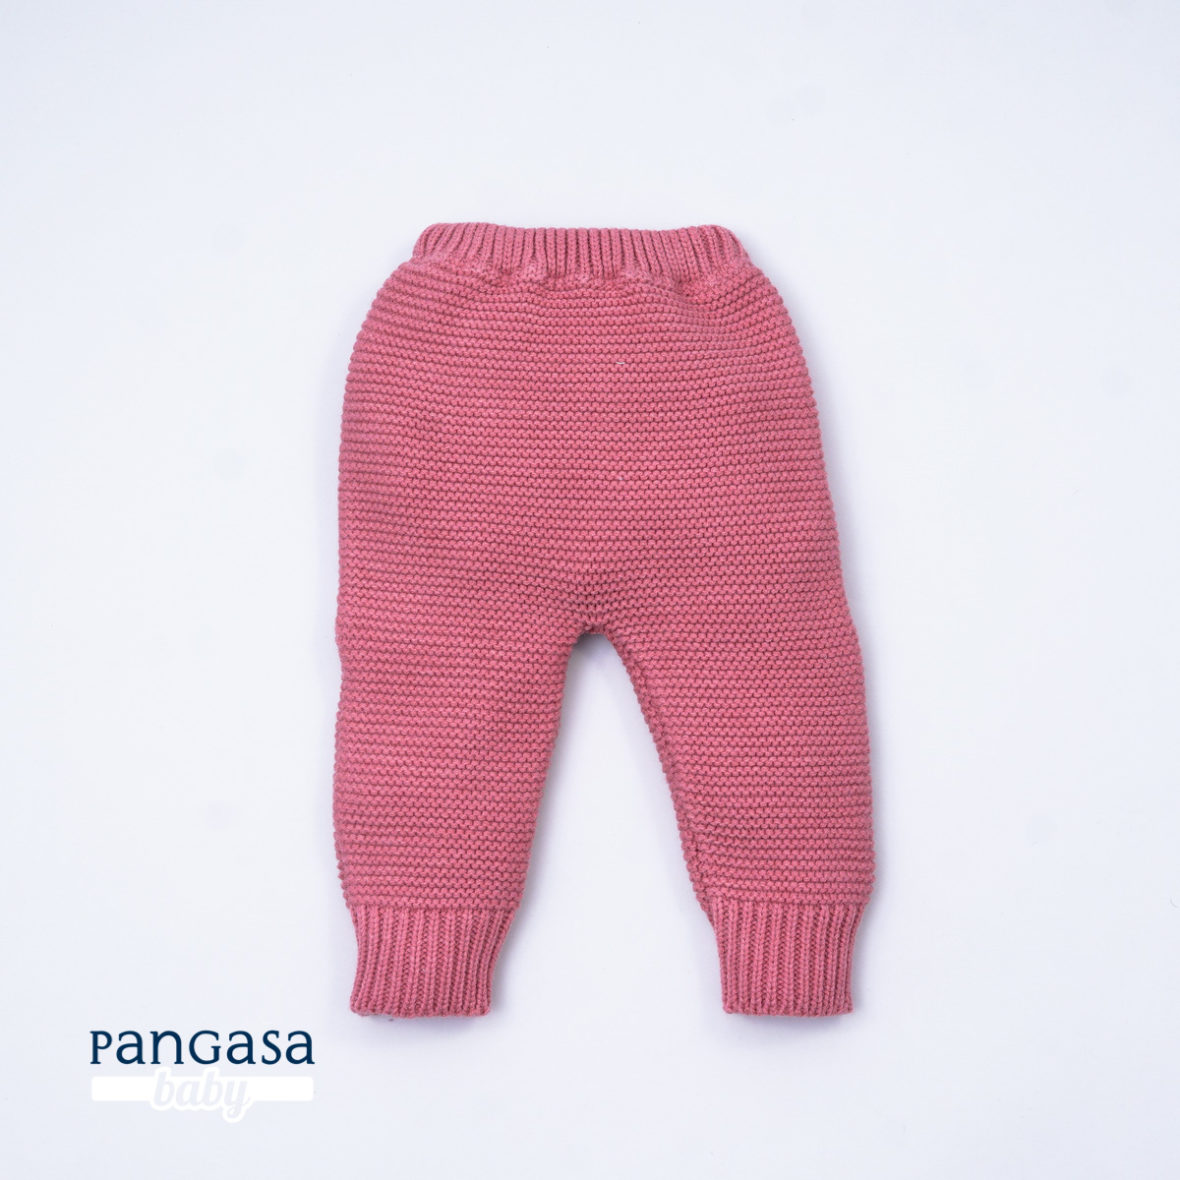 Pantalón links de Pangasa coral para tu bebé